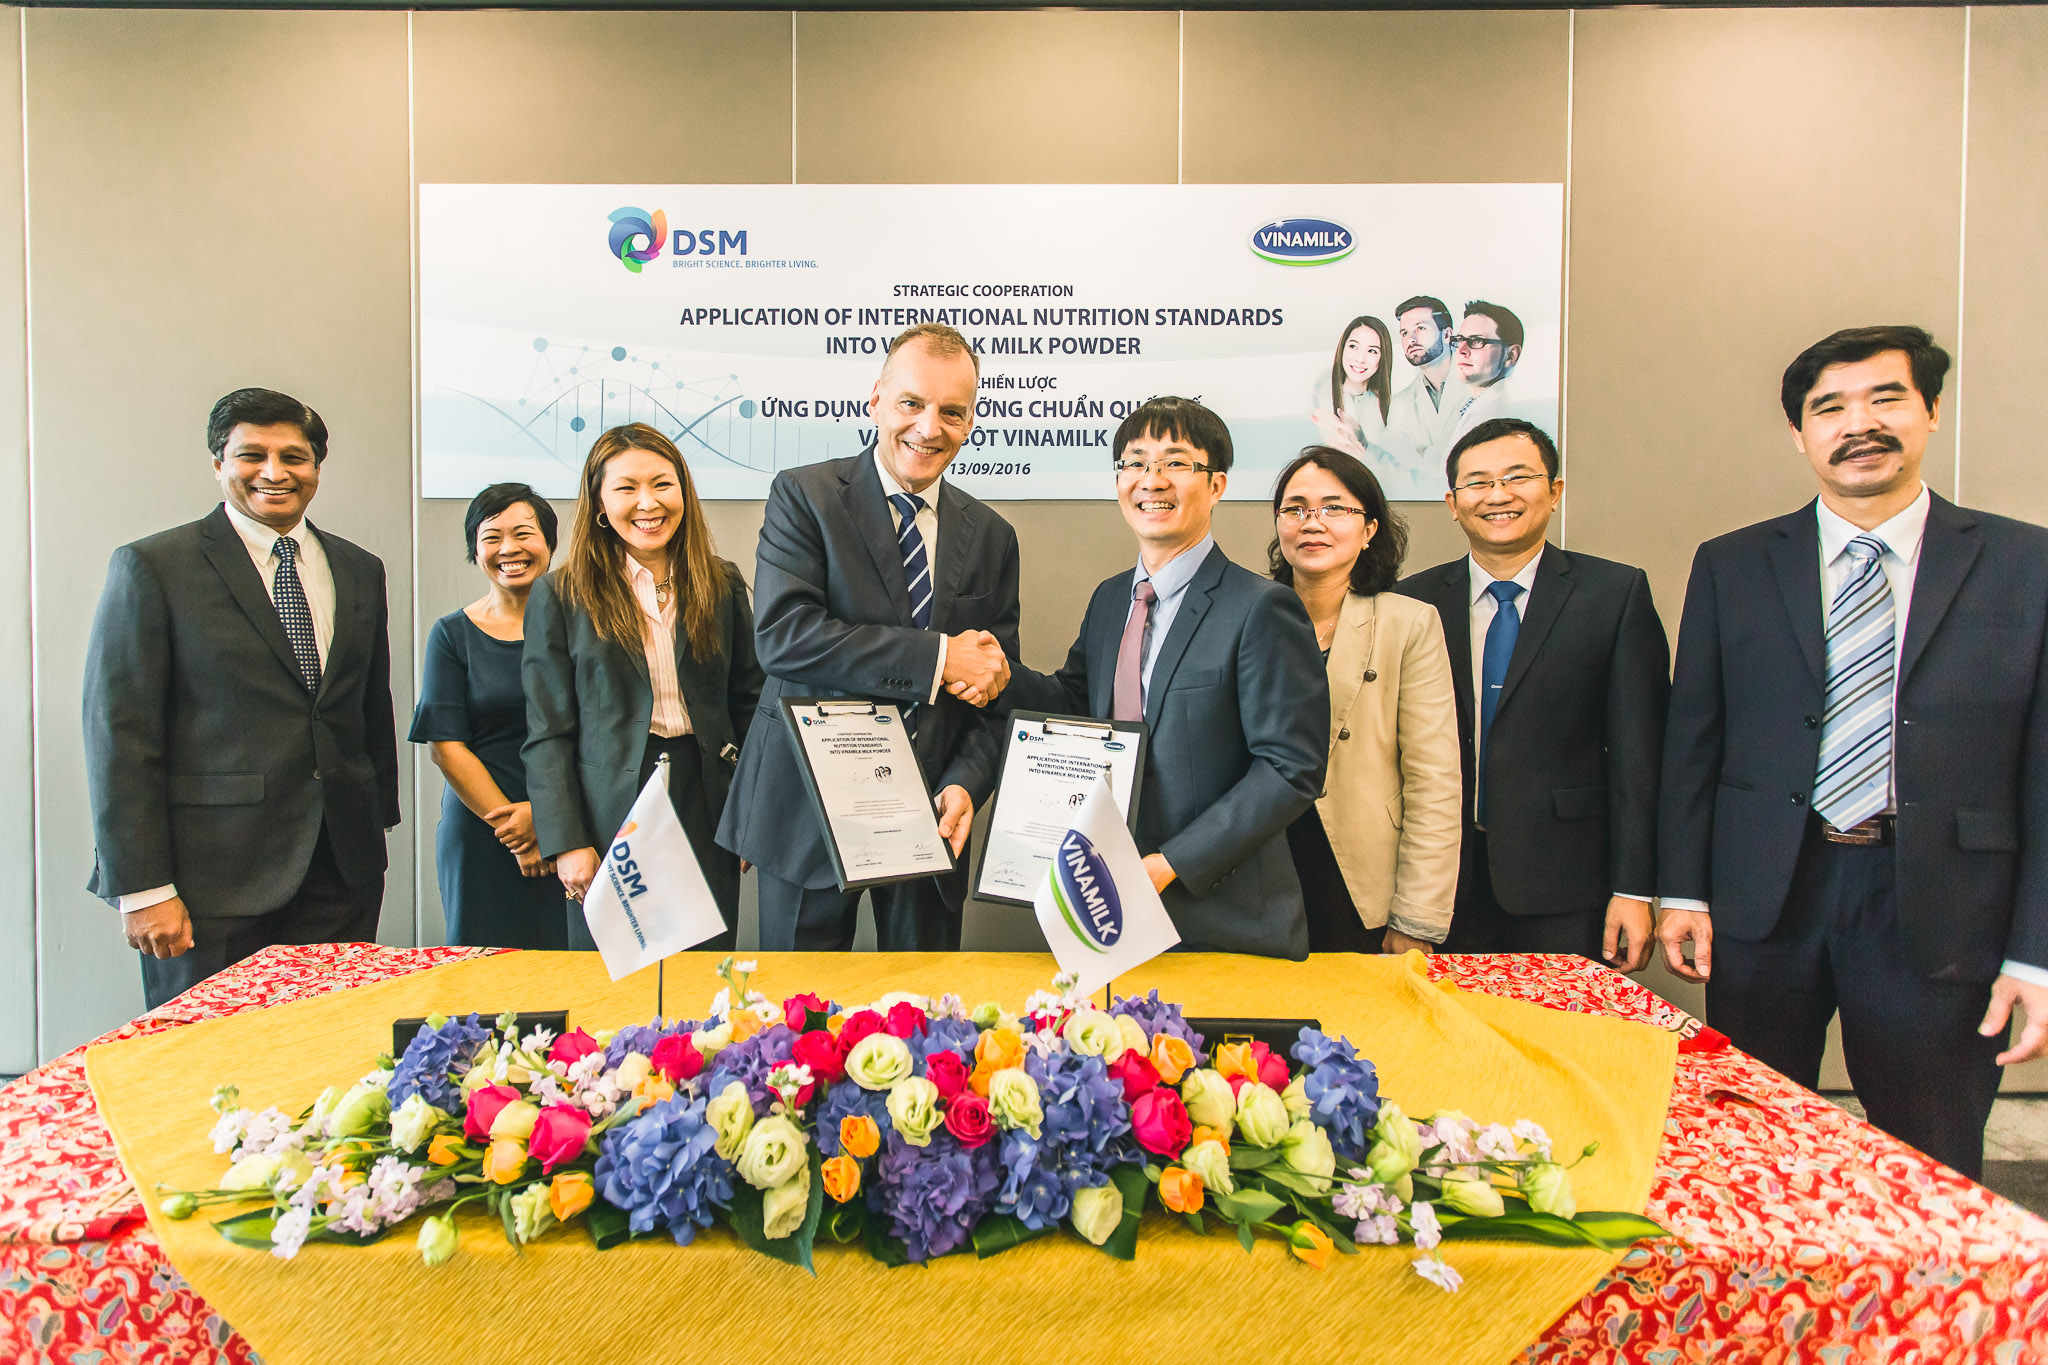 Công ty cổ phần Sữa Việt Nam ký kết hợp tác chiến lược với Tập đoàn DSM - Thụy Sĩ